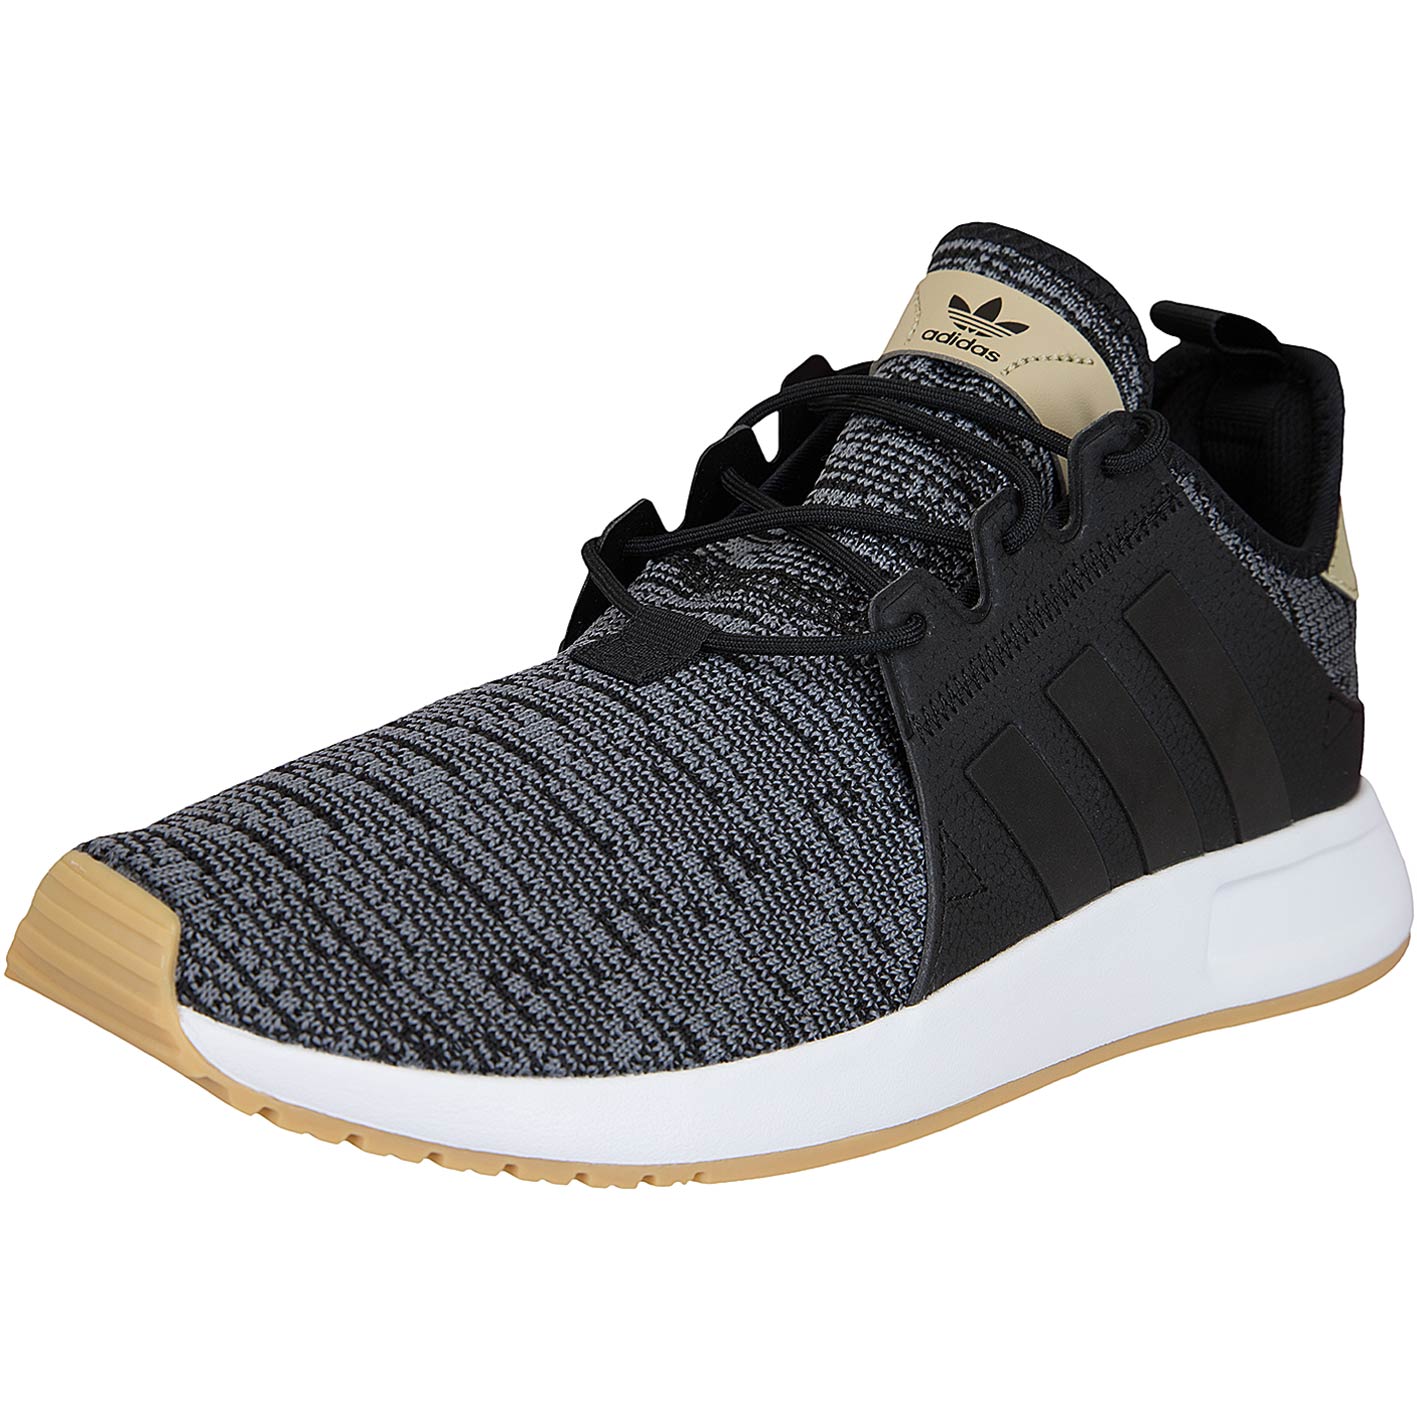 ☆ Adidas Originals Sneaker X PLR schwarz/grau - hier bestellen!